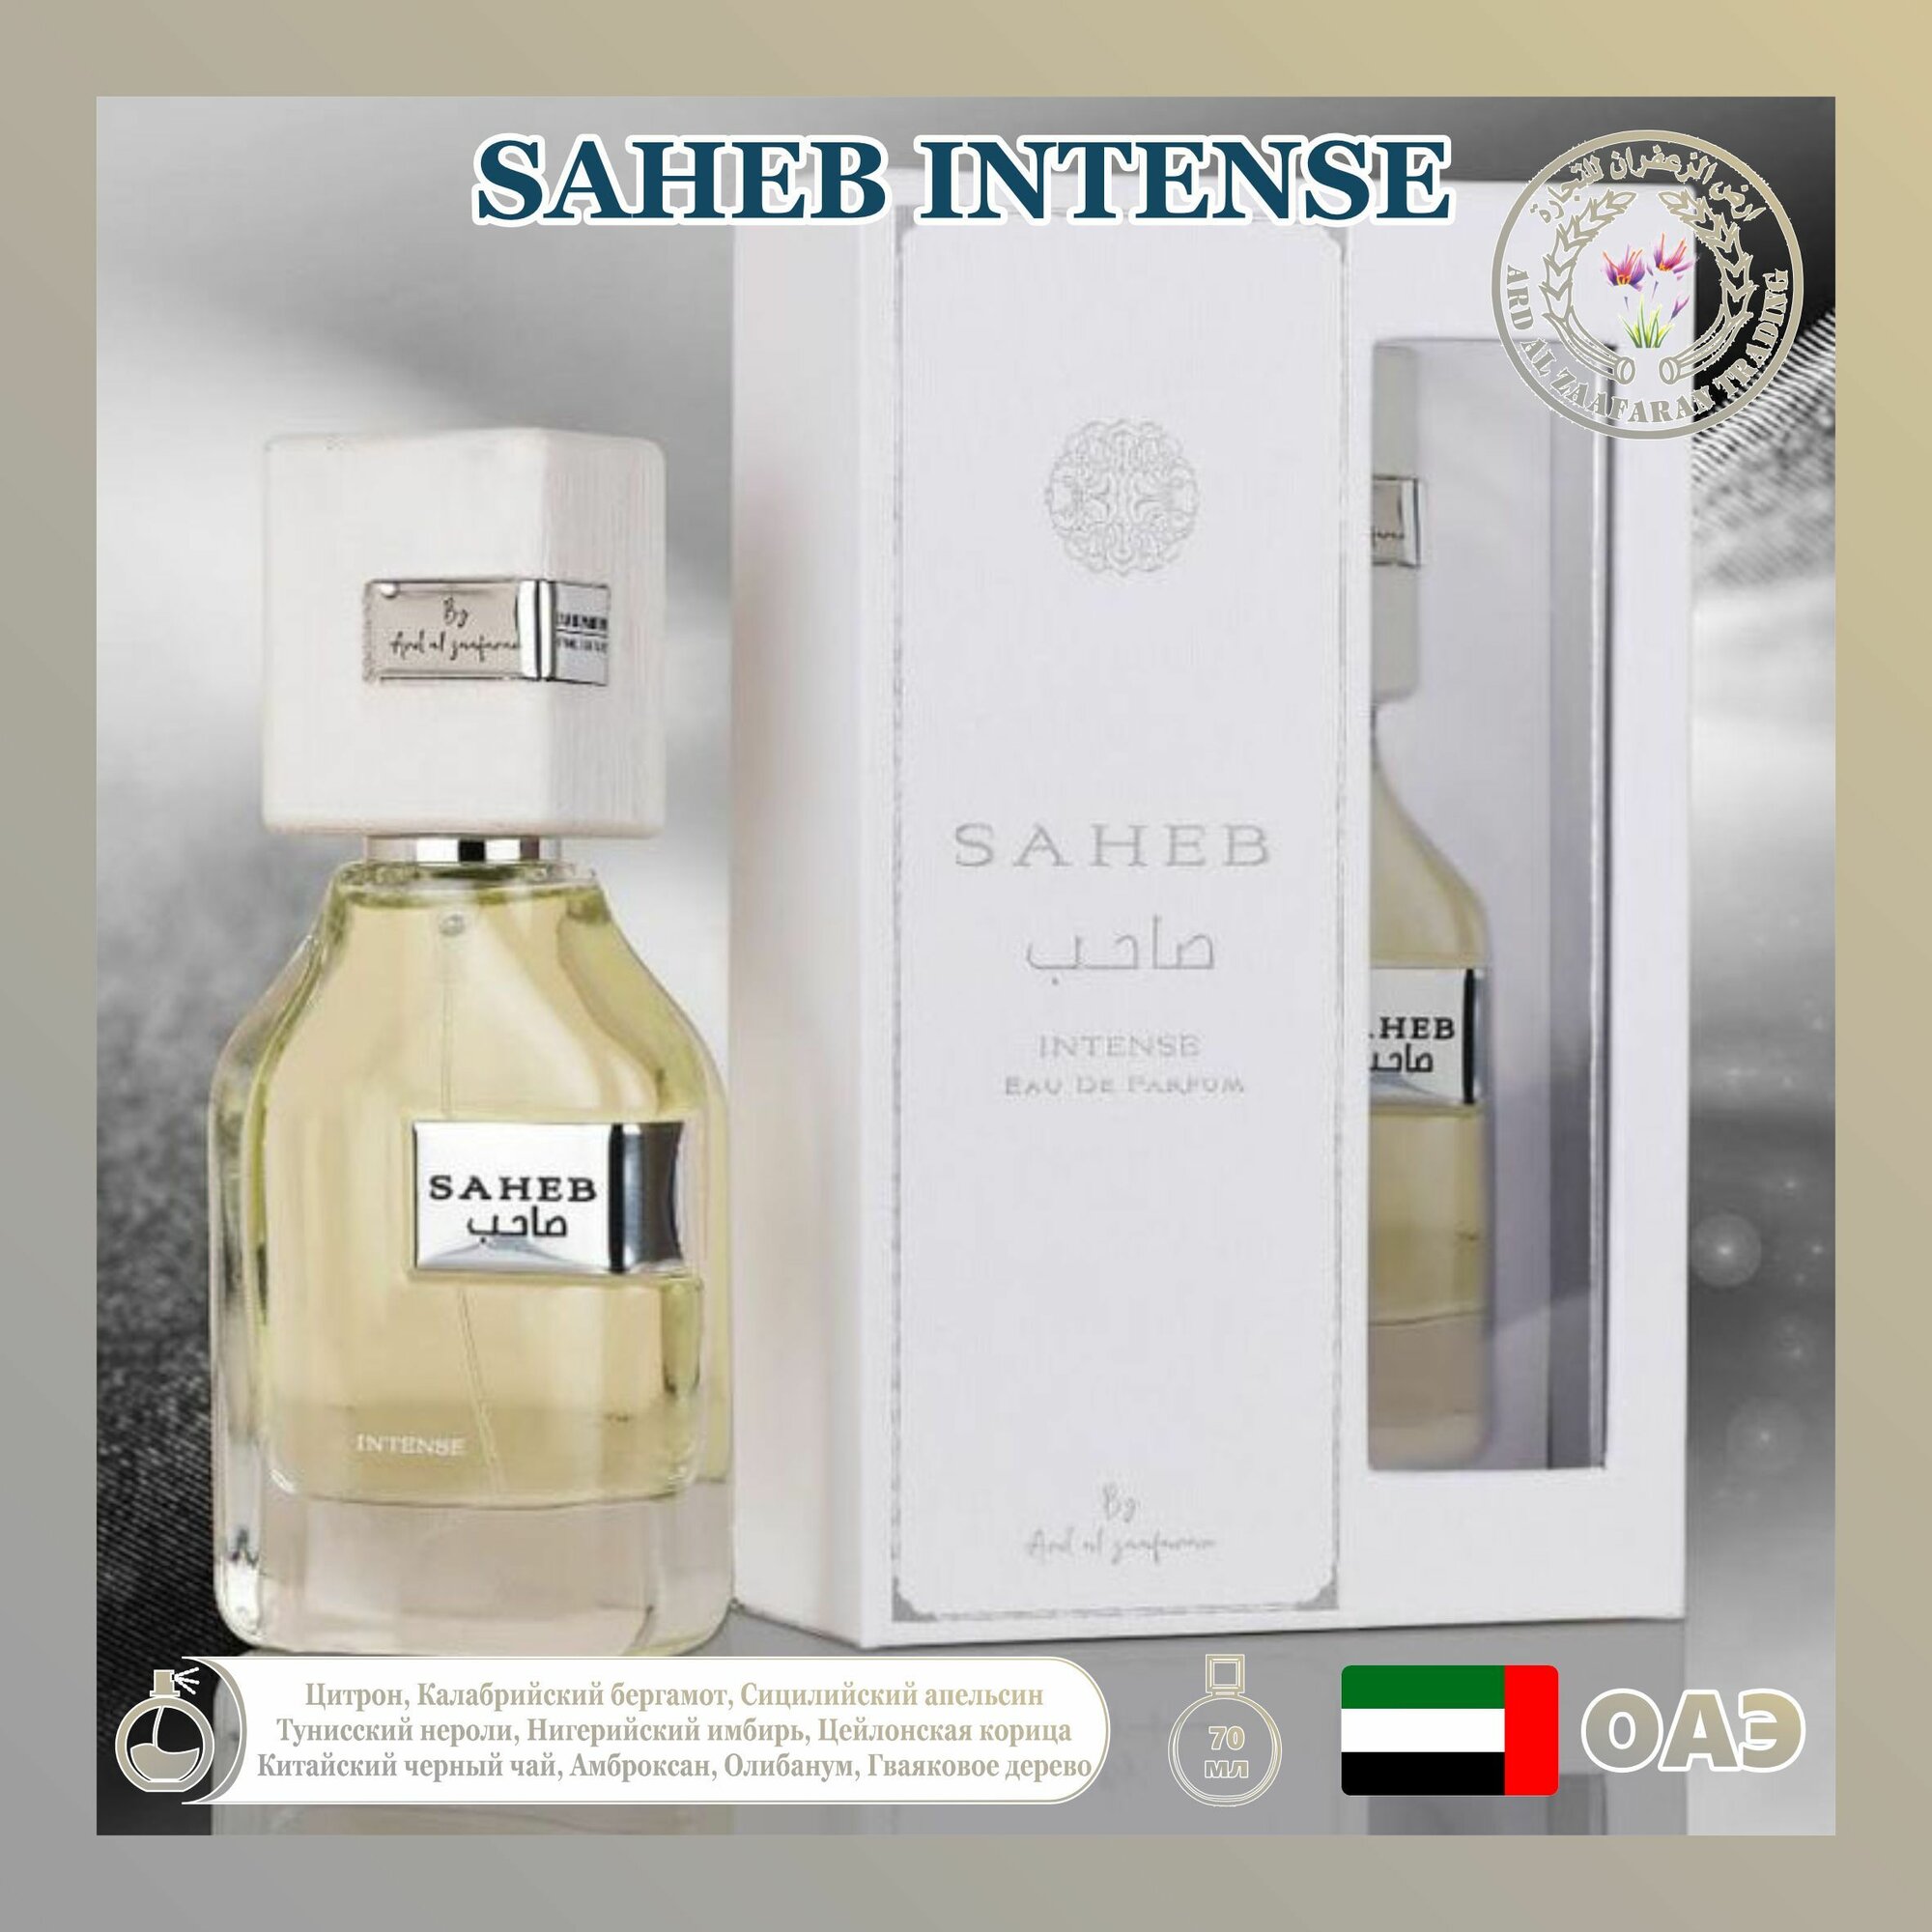 Арабский парфюм унисекс Saheb intense, Ard al zaafaran, 70 мл